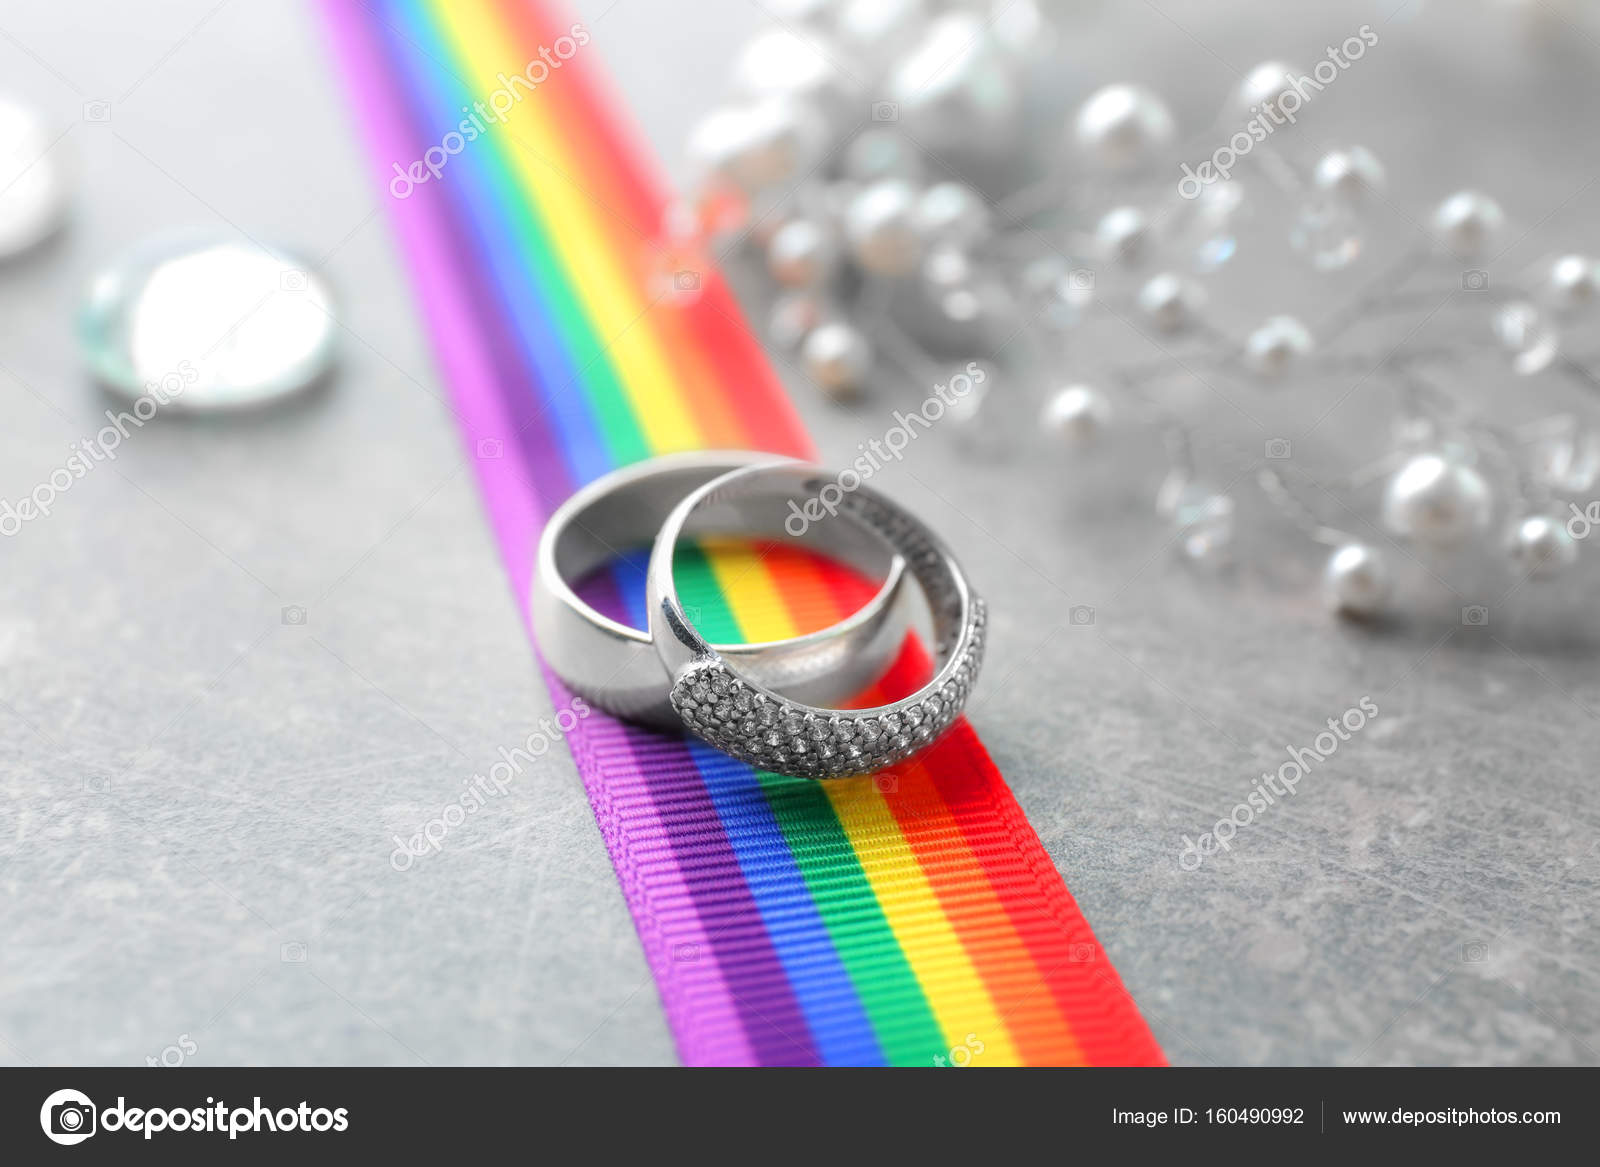 Kite Moissanite and Diamond Engagement Ring Set - Aurelius Jewelry